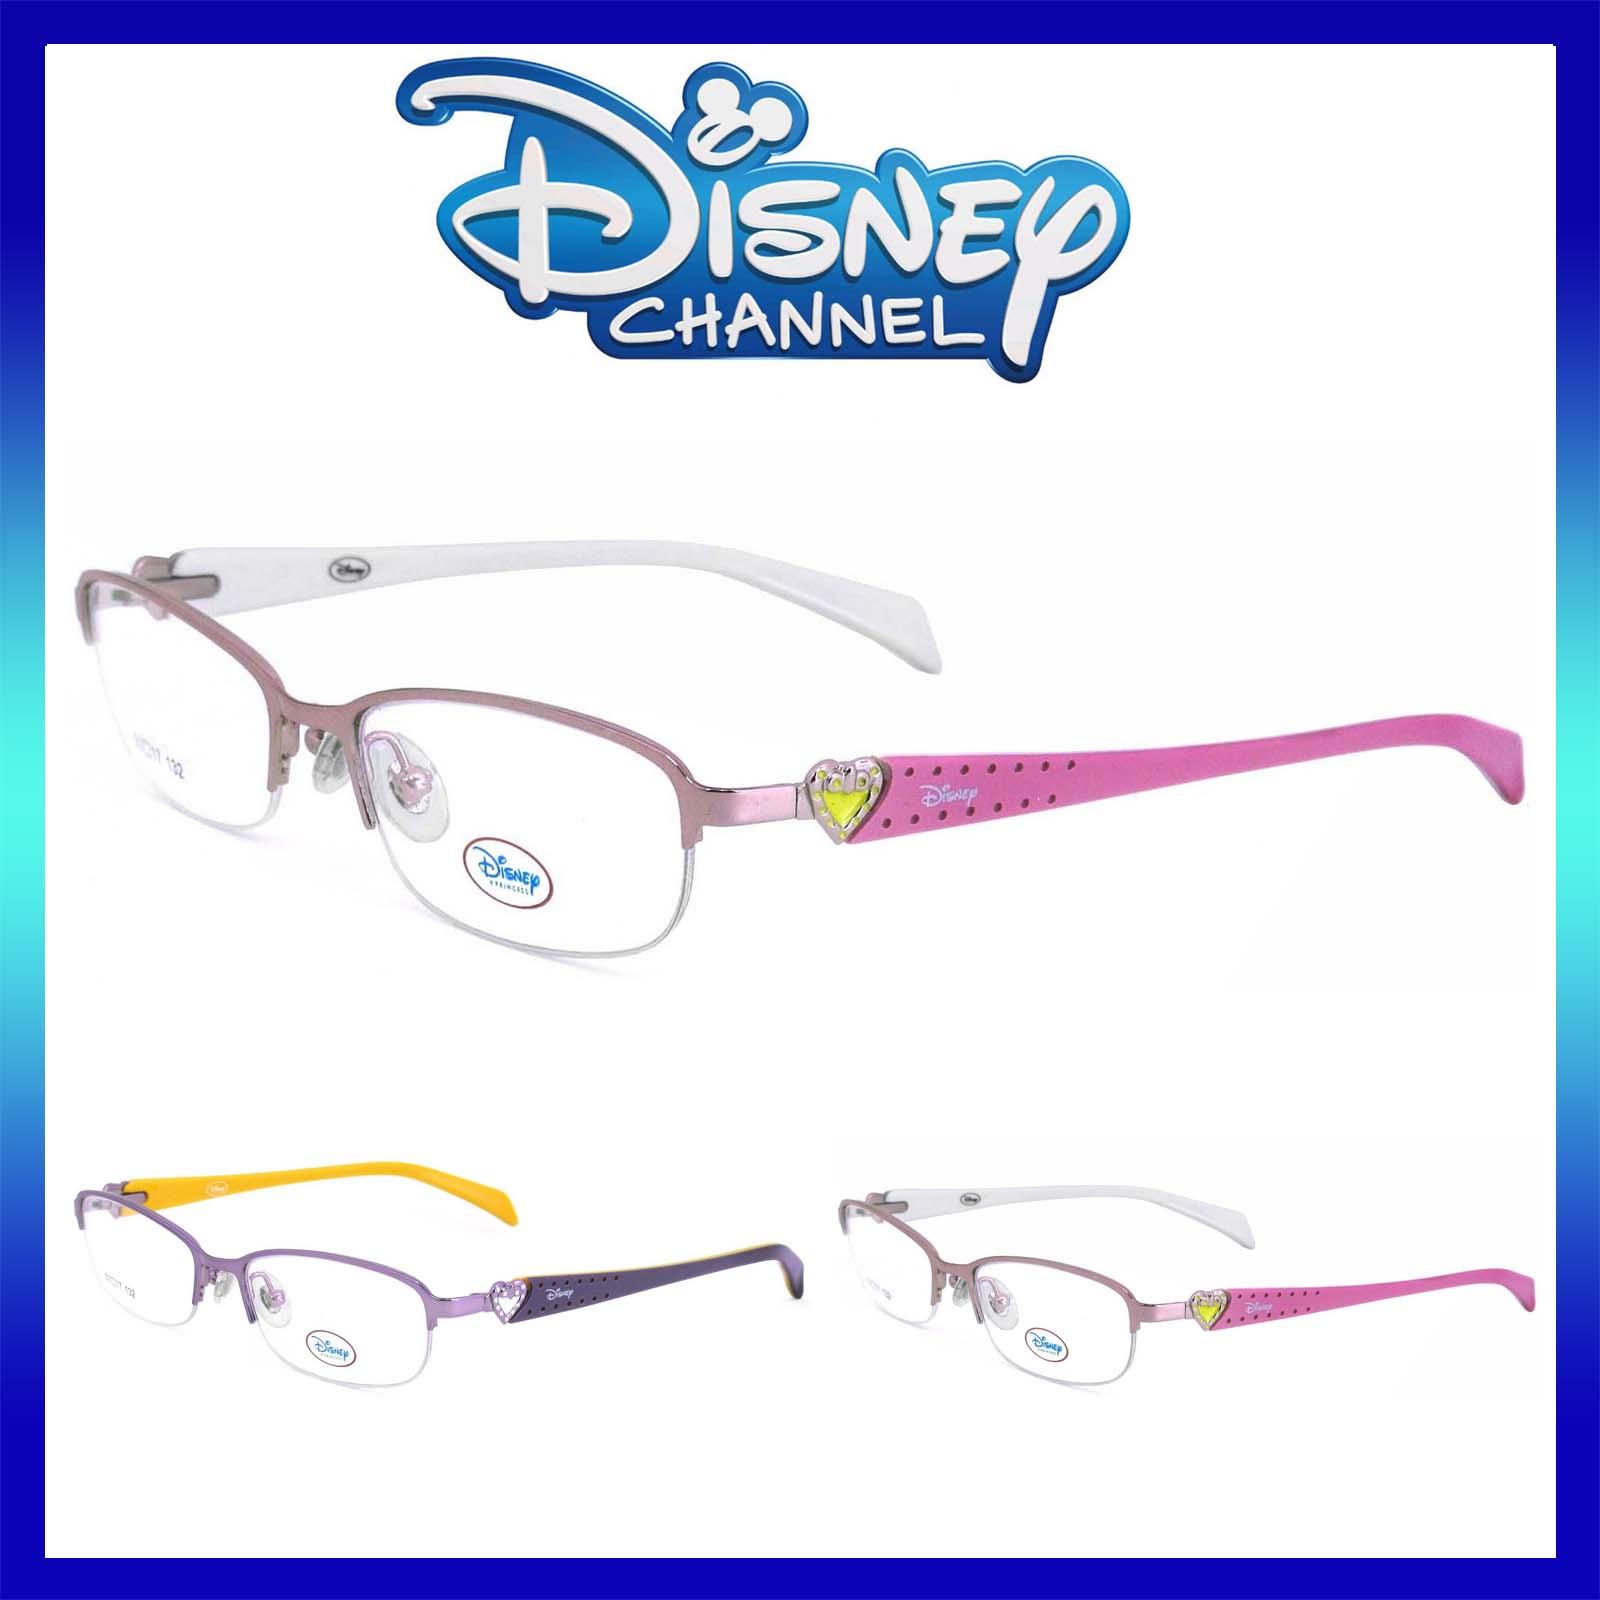 แว่นตาเกาหลีเด็ก Fashion Korea Children แว่นตาเด็ก รุ่น DY 019 กรอบแว่นตาเด็ก Rectangle ทรงสี่เหลี่ยมผืนผ้า Eyeglass baby frame ( สำหรับตัดเลนส์ ) วัสดุ สแตนเลส สตีล เบา ขาสปริง Eyeglass Spring legs Stainless Steel material Eyewear Kid  Top Glasses